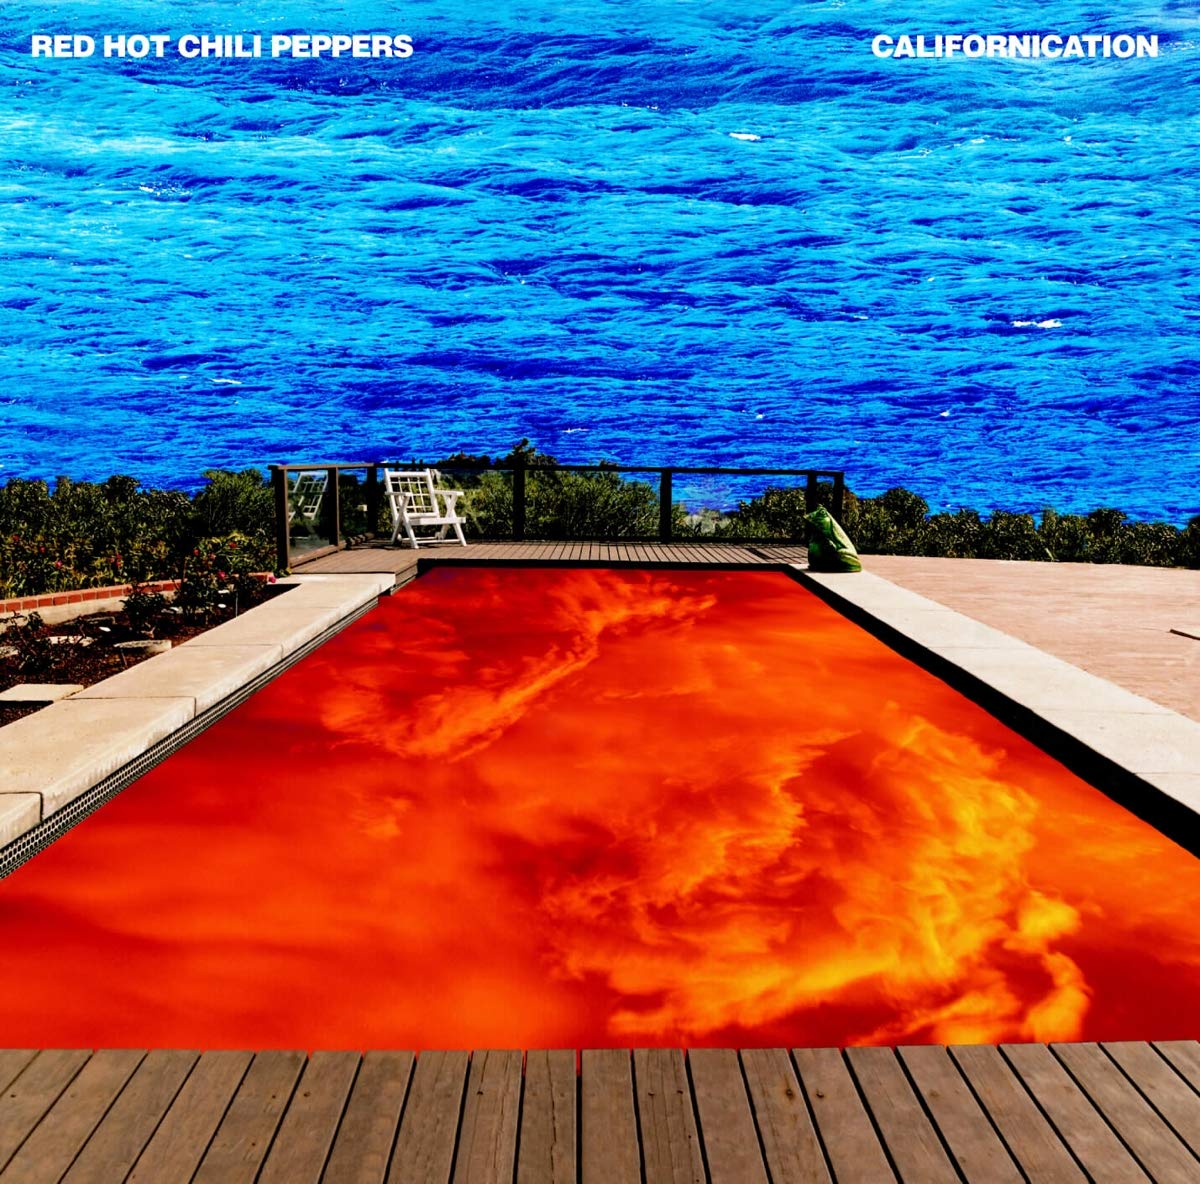 RED HOT CHILI PEPPERS - CALIFORNICATION - 2-LP - LP DE VINILO